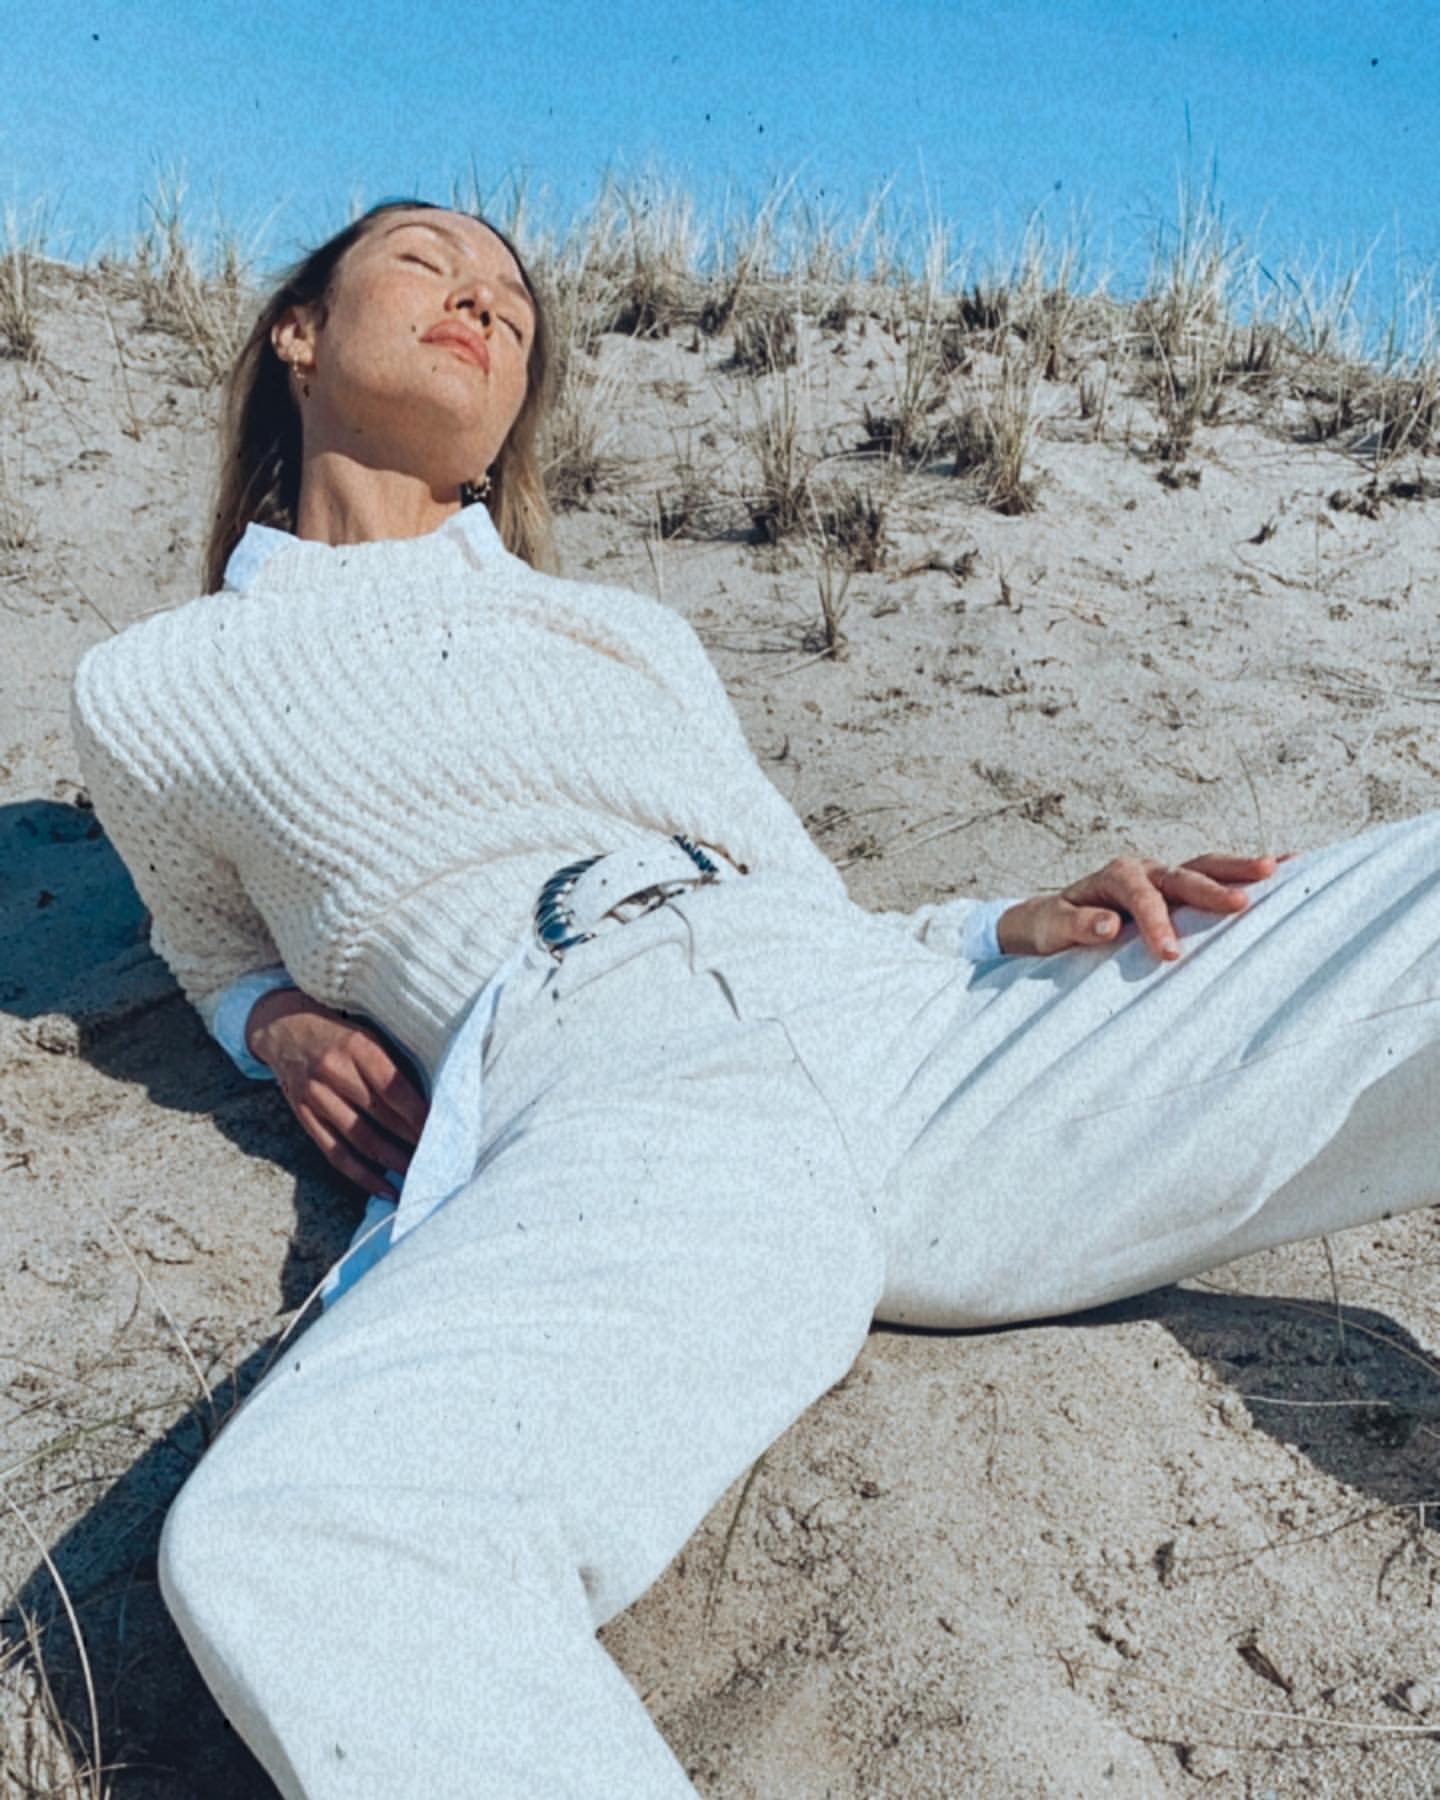 Fotos n°22 : Candice Swanepoel en la playa!